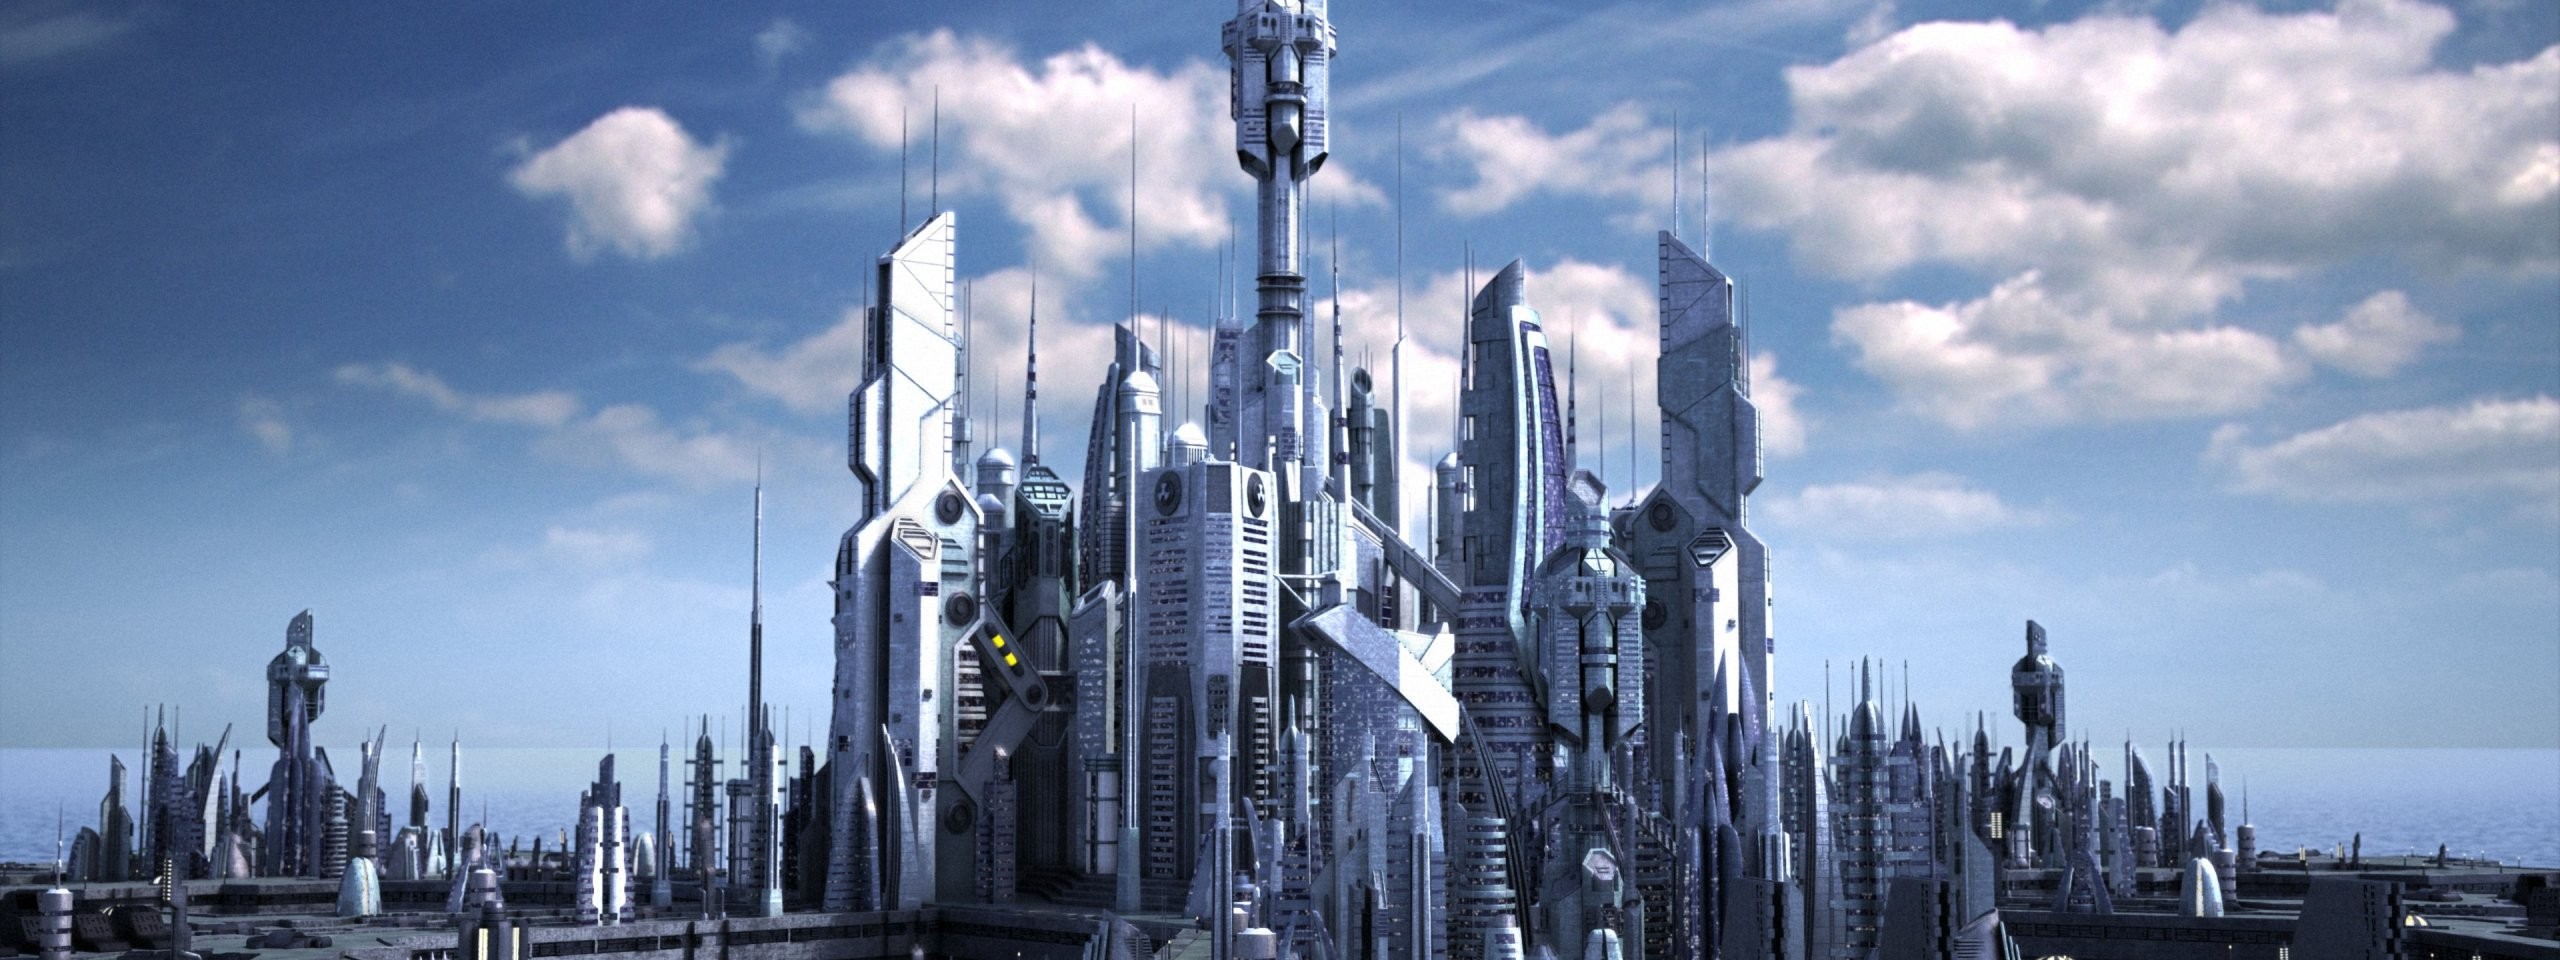 General 2560x960 Stargate Atlantis skyscraper science fiction TV series futuristic city cityscape